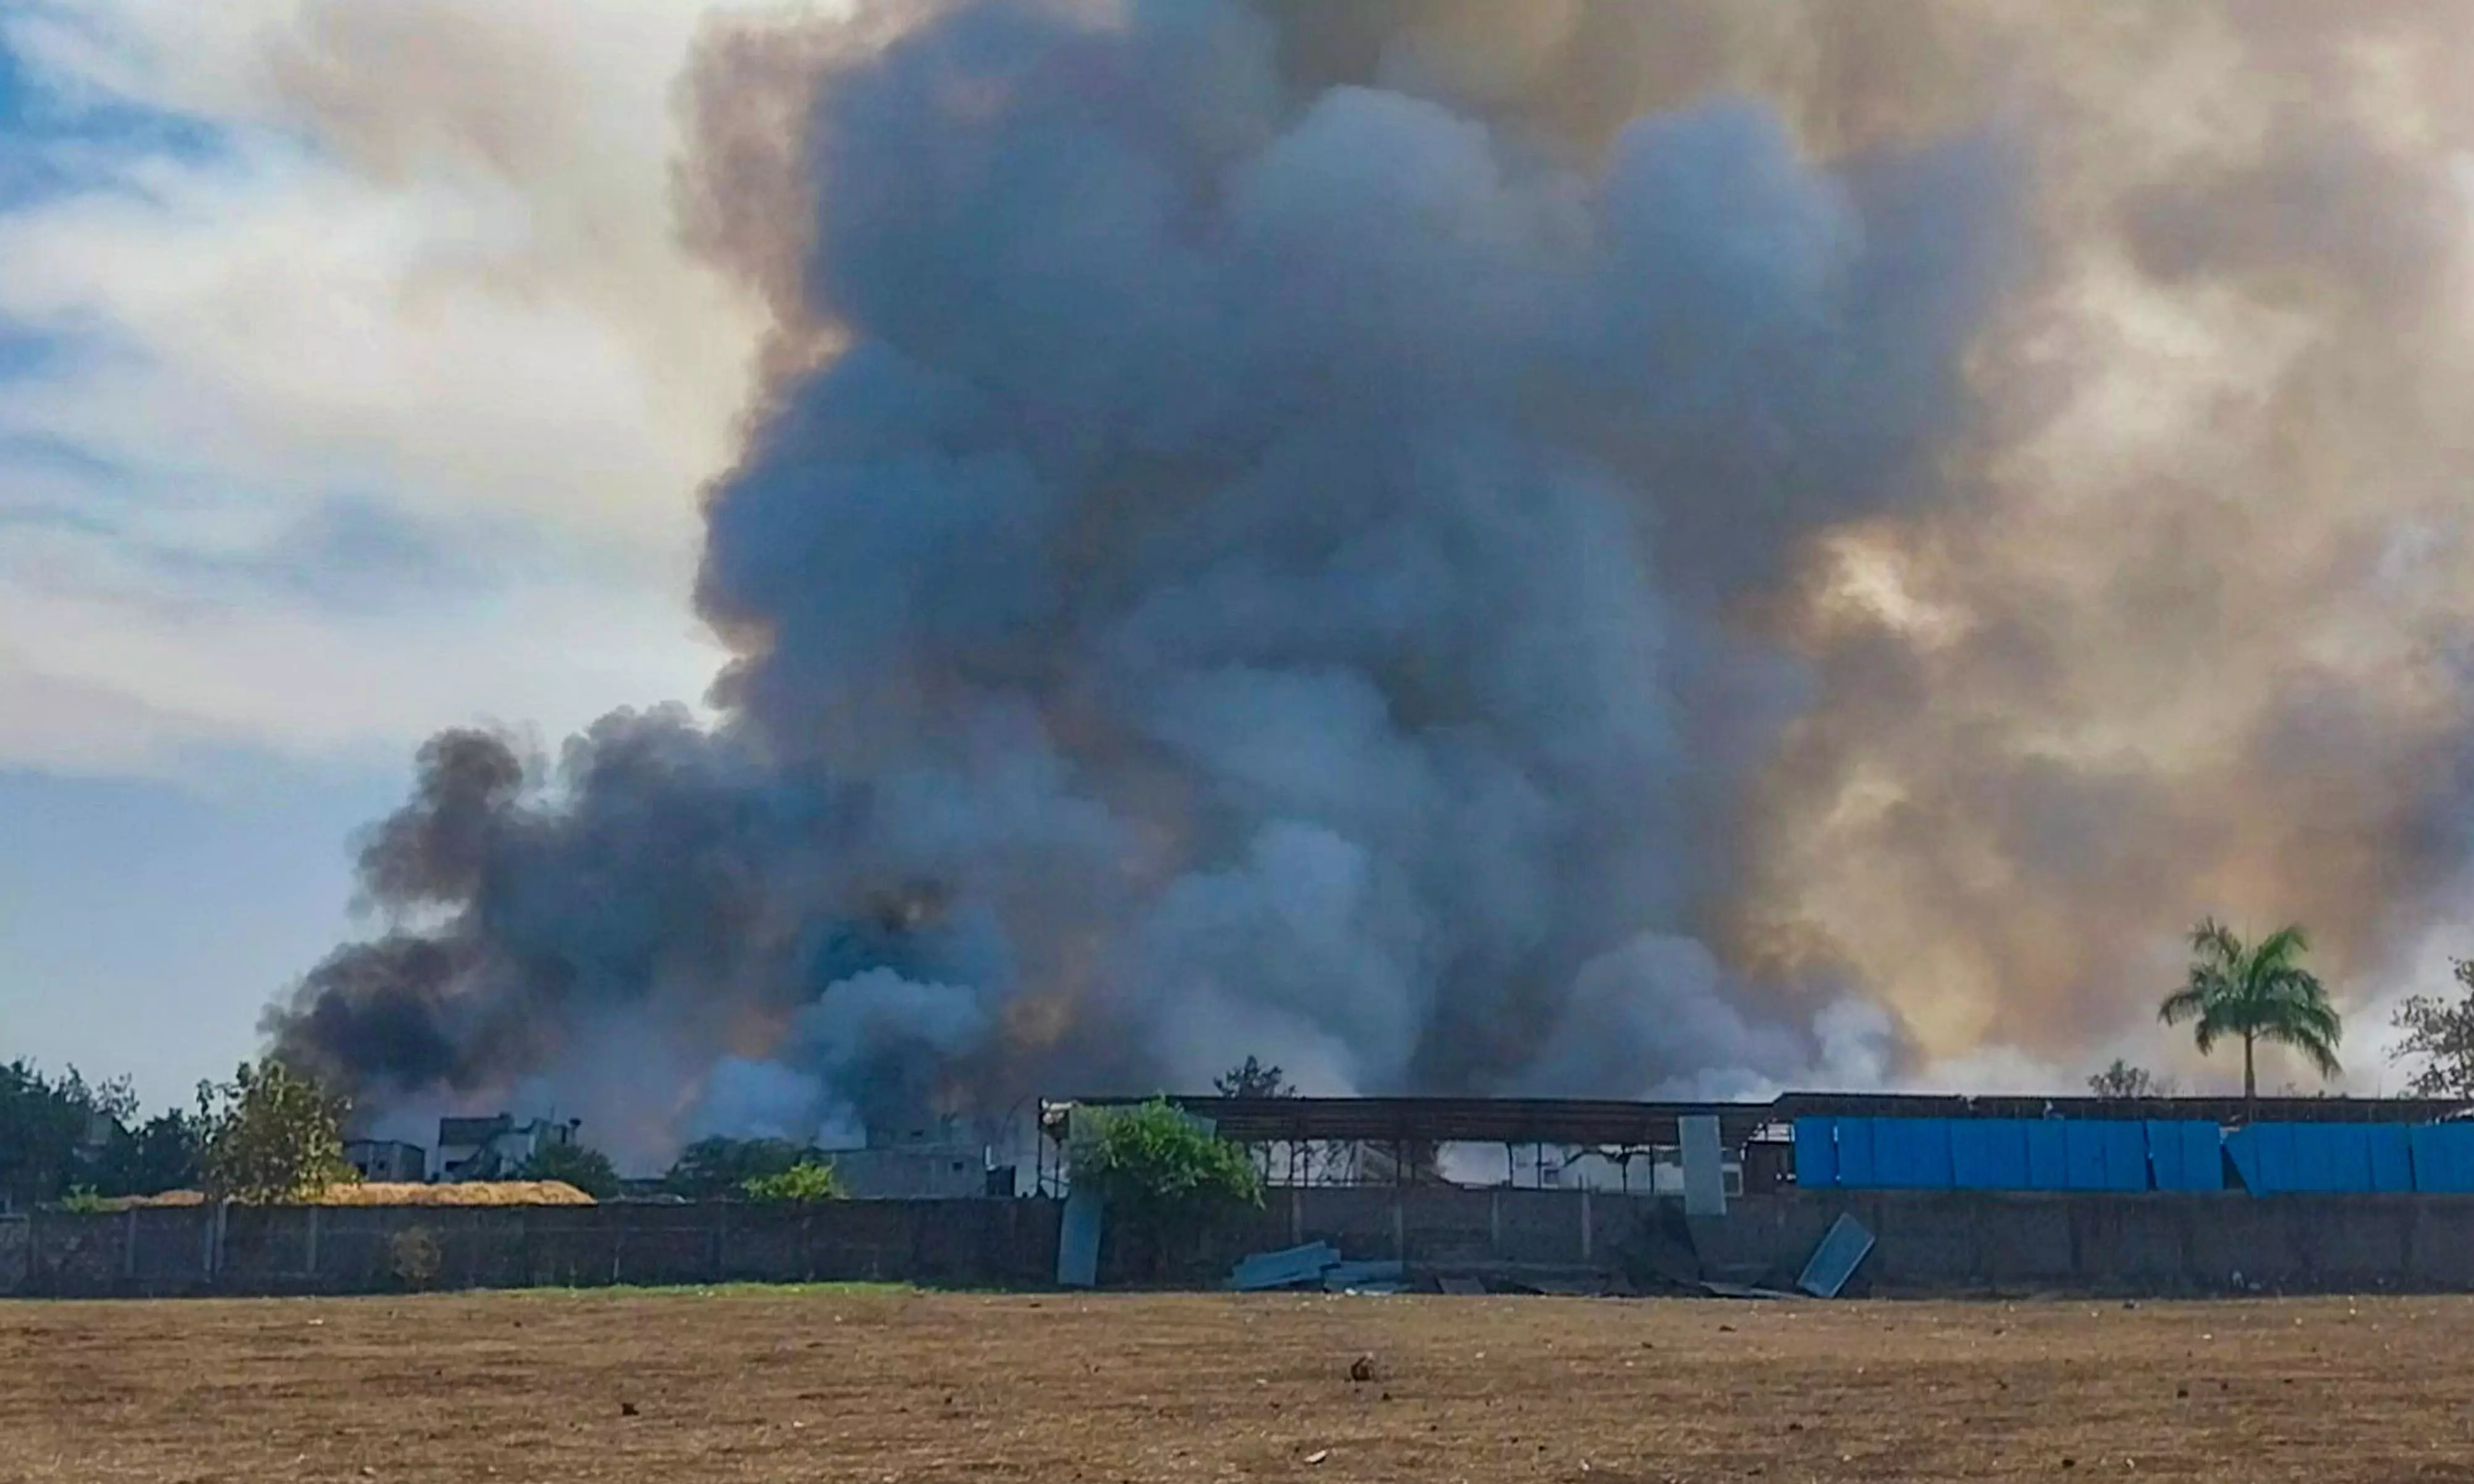 Kerala firecracker warehouse blast leaves one dead, 16 injured